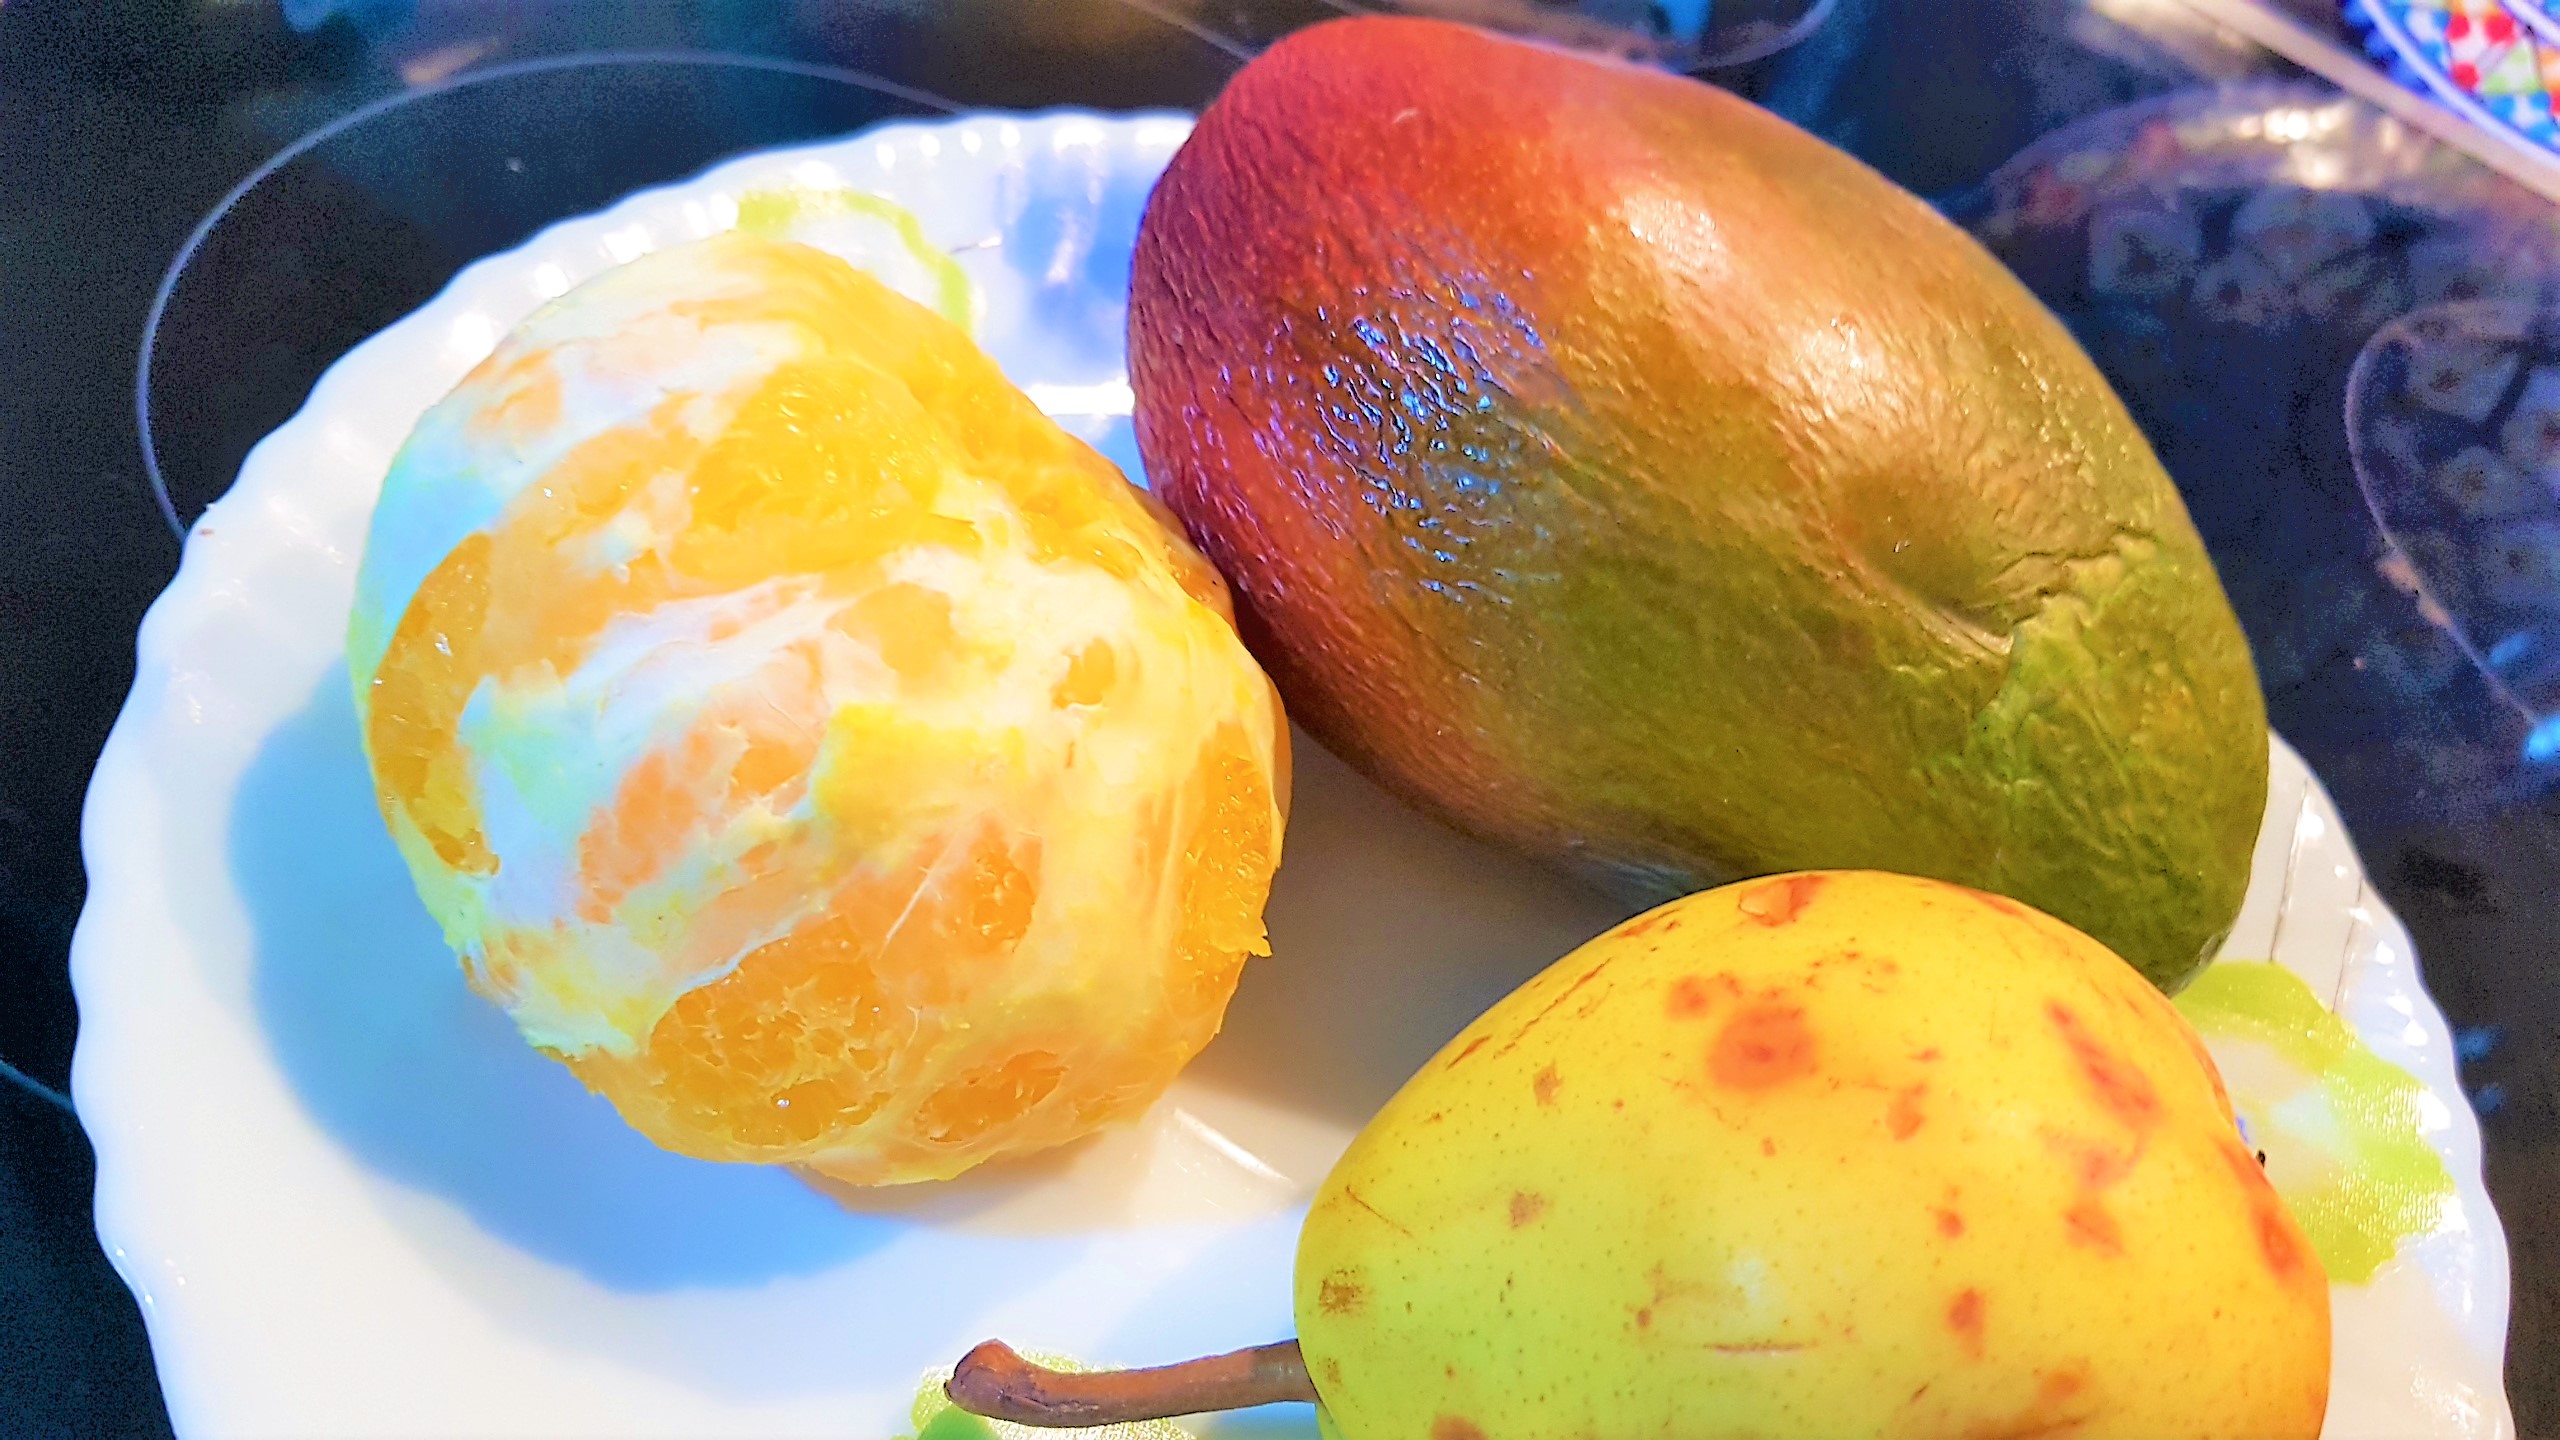 Chutney cu zmeura, mango, pere si portocala